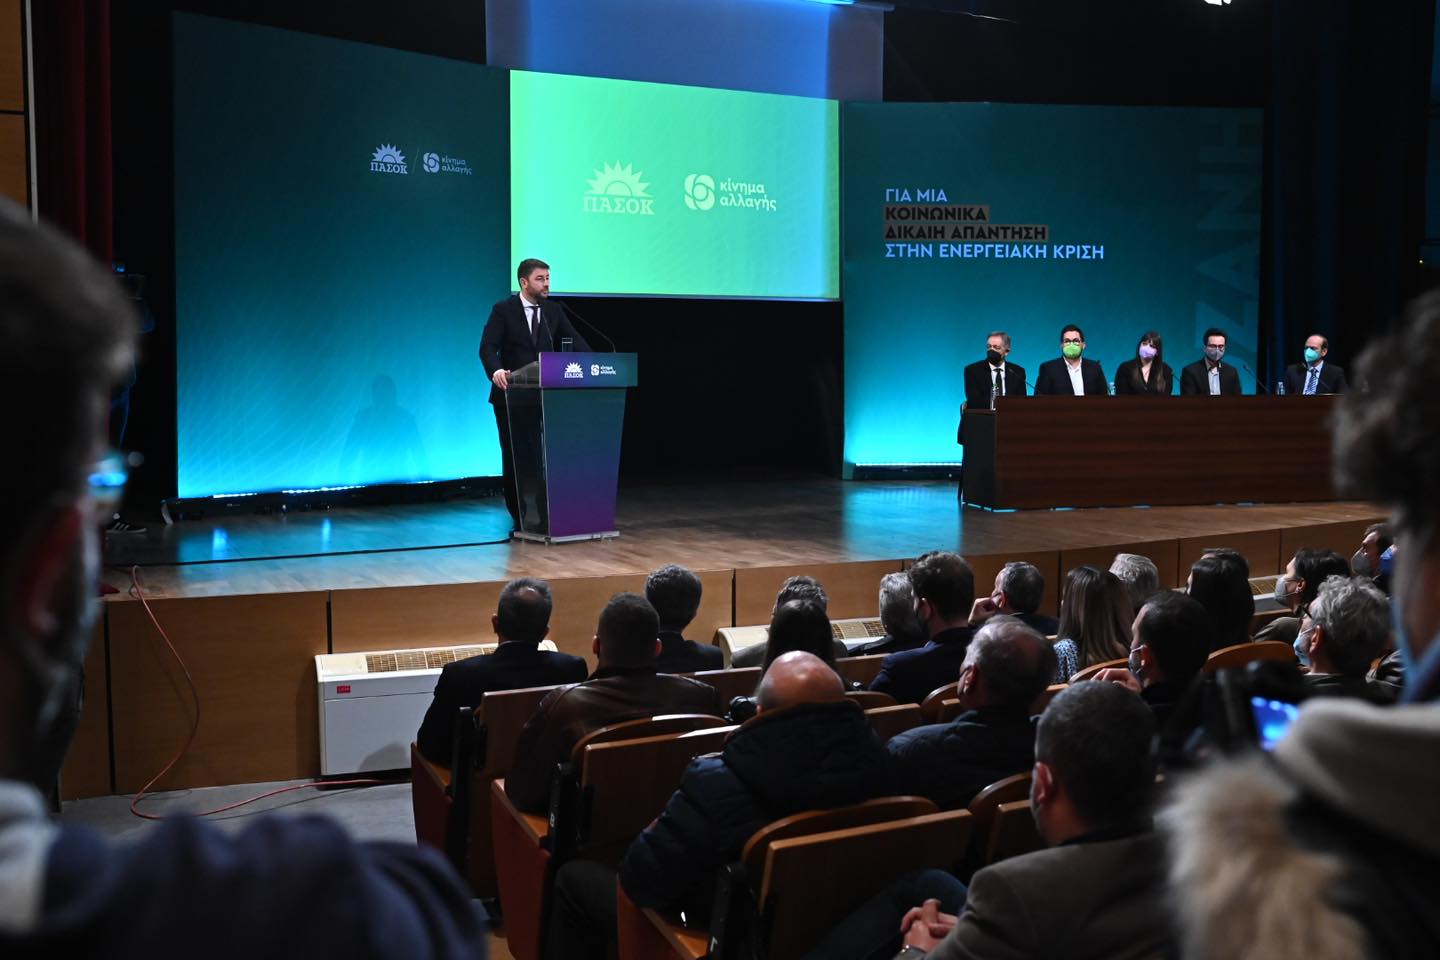 Προσυνέδριο για την ενέργεια: για μια δίκαιη κοινωνία απάντηση στην ενεργειακή κρίση